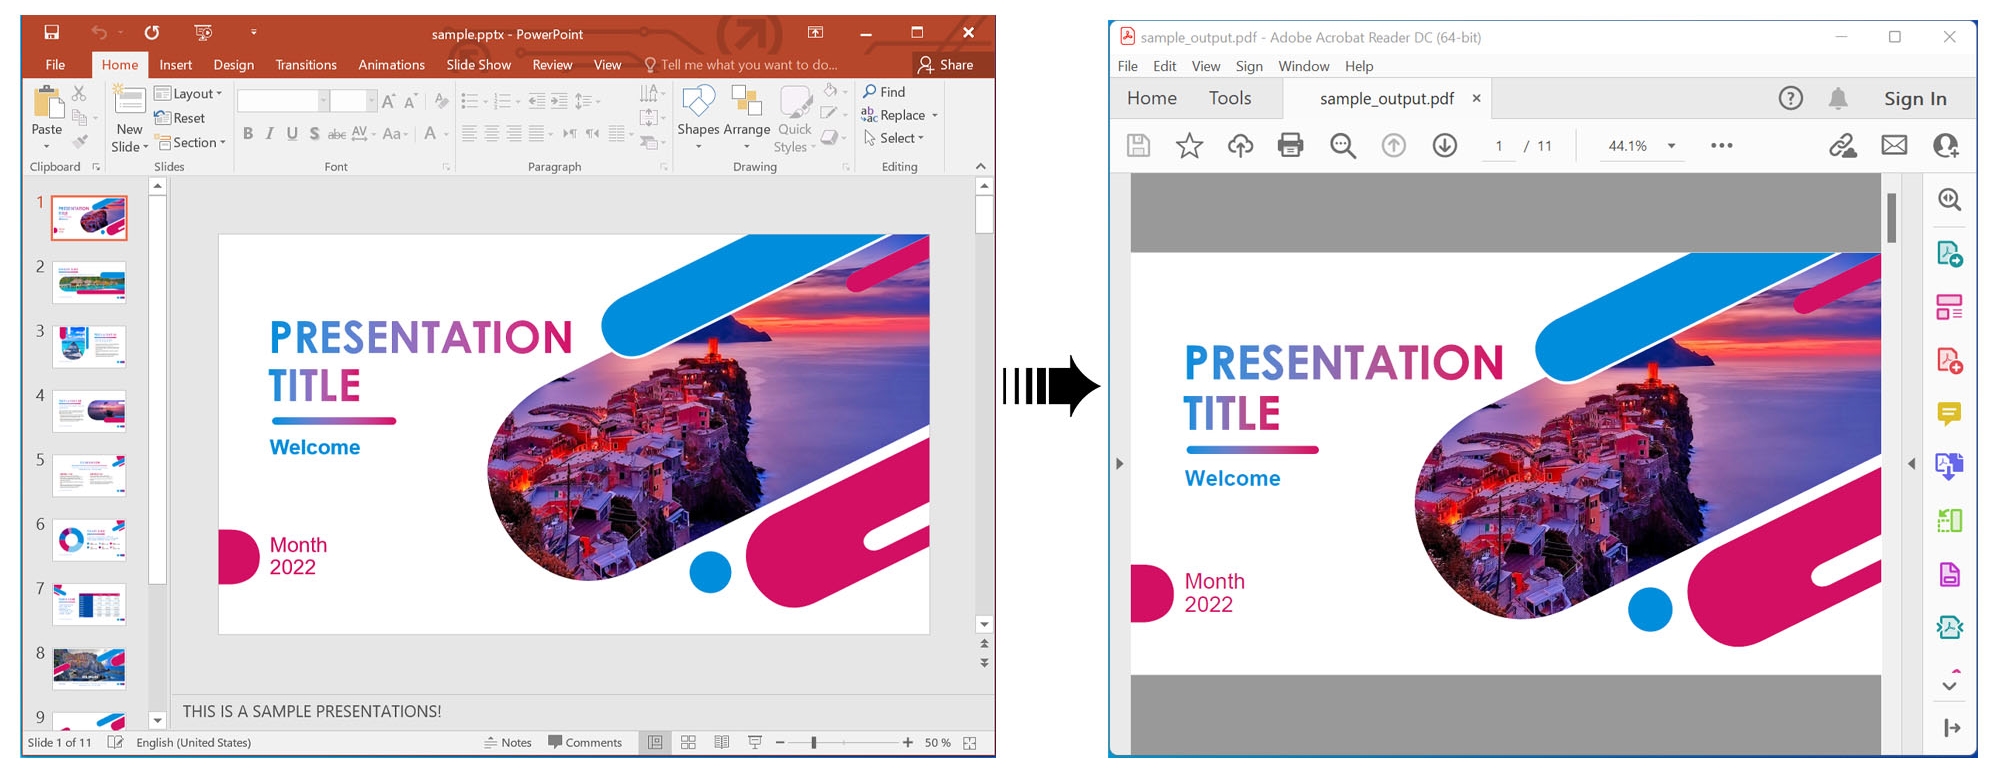 Eseguire il rendering di una presentazione PowerPoint in PDF utilizzando C#.